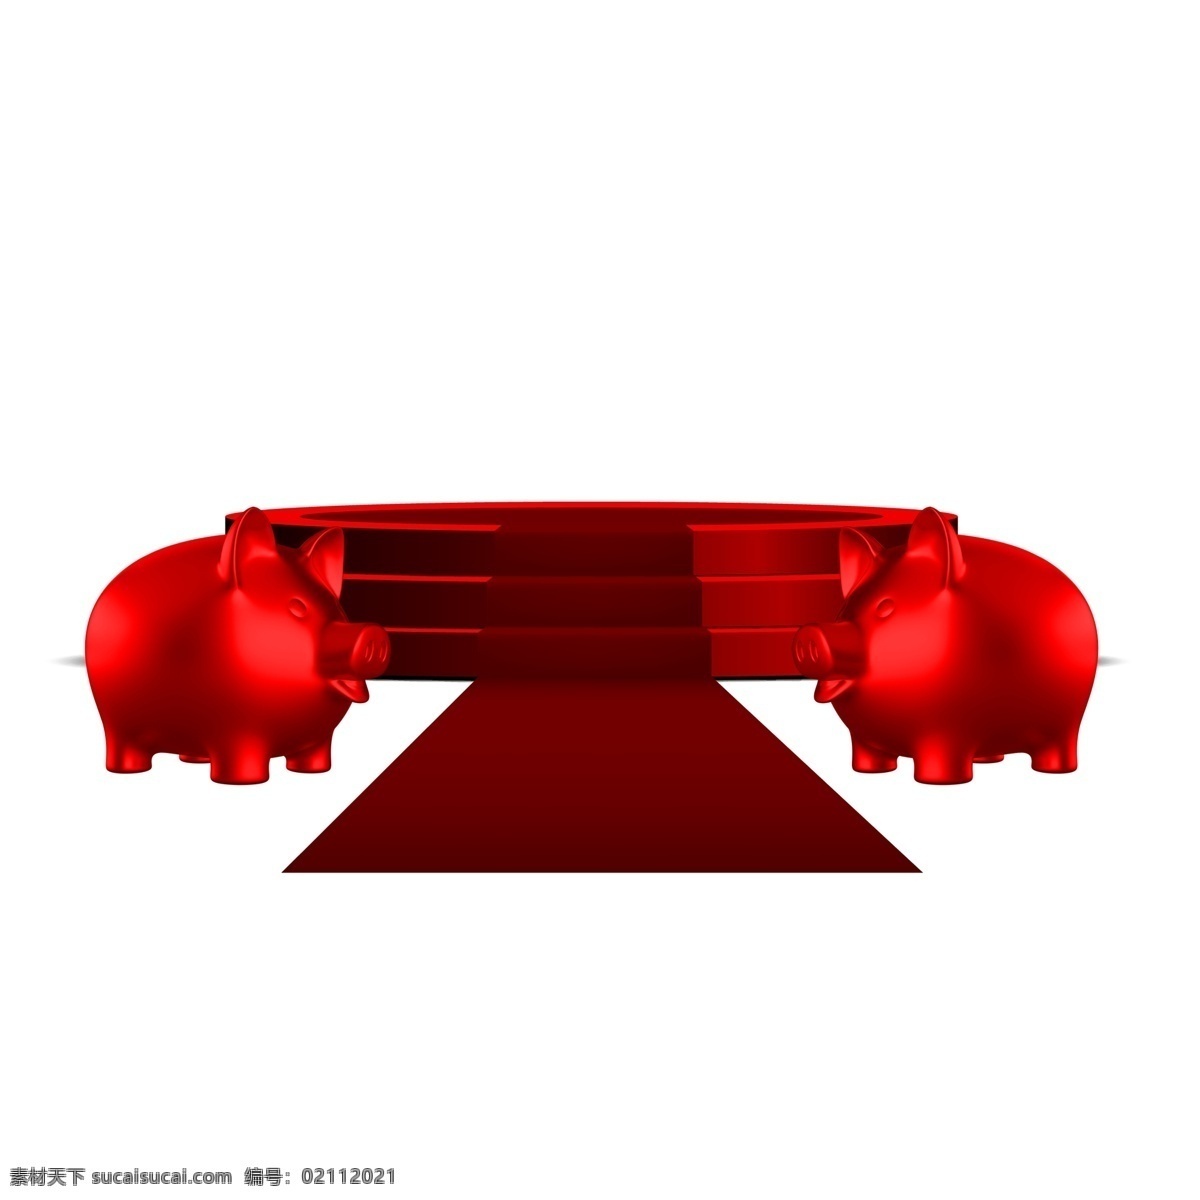 红色 舞台 金 猪 免 抠 图 一对金猪 地毯 节日布置 活动布置 3d舞台模型 表演舞台 活动氛围 红色的舞台